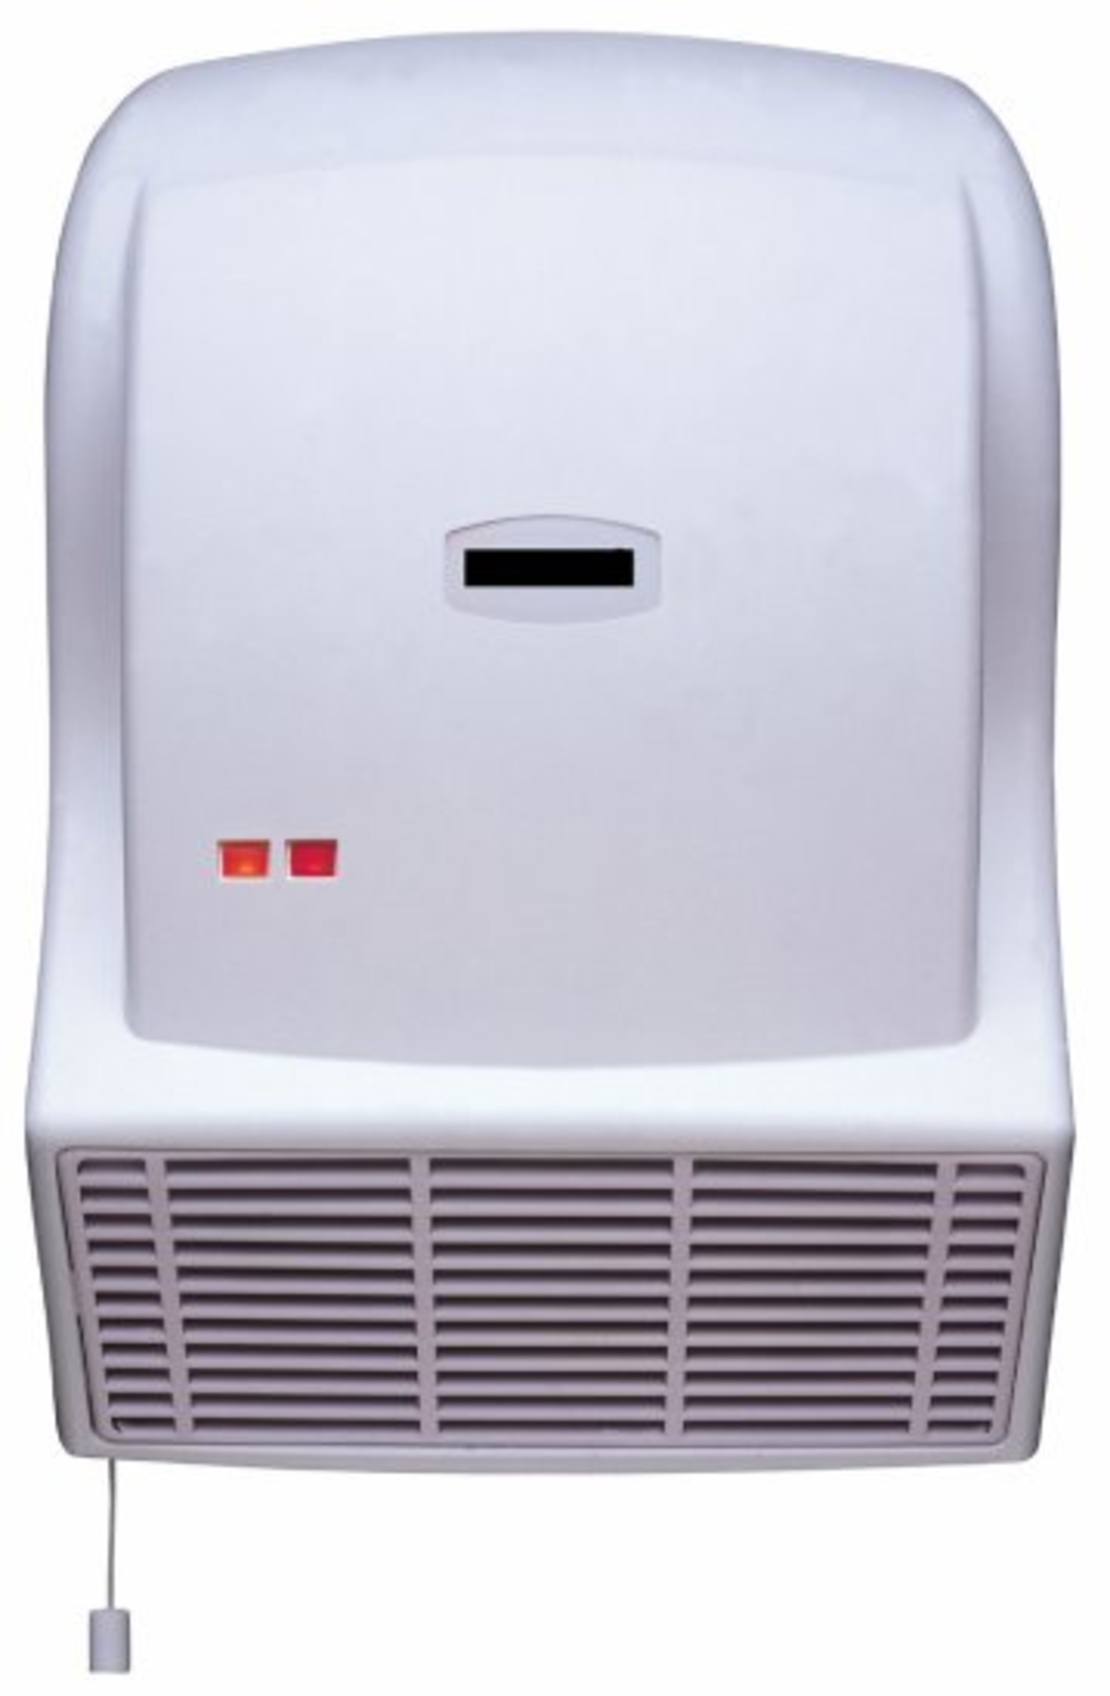 Hemilton bathroom heater HEM-853 2200W